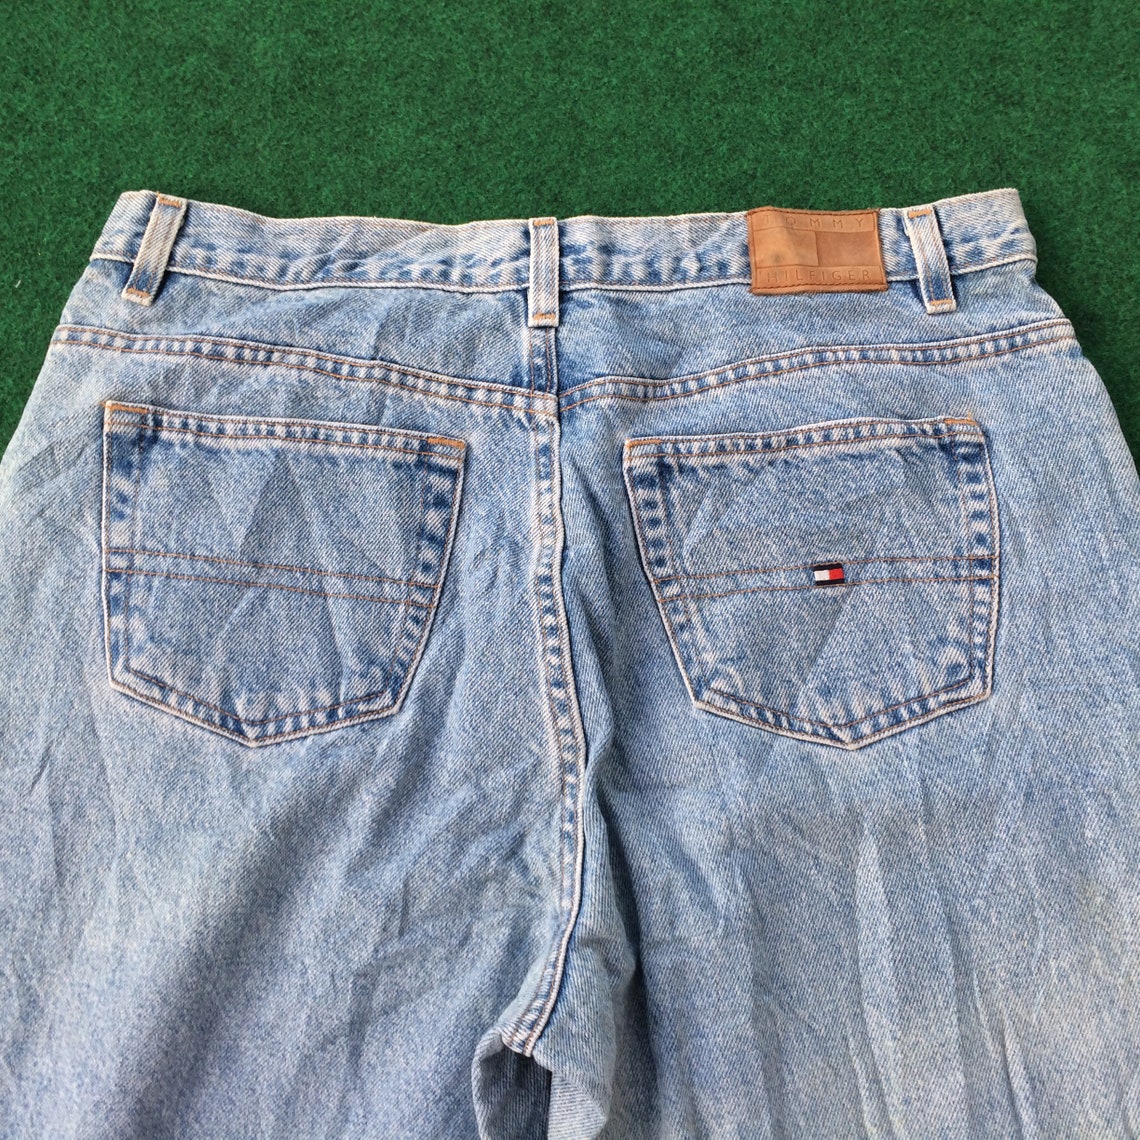 Vintage Tommy Hilfiger Jeans Swag 90s Hip Hop Style Size 34 - Etsy UK